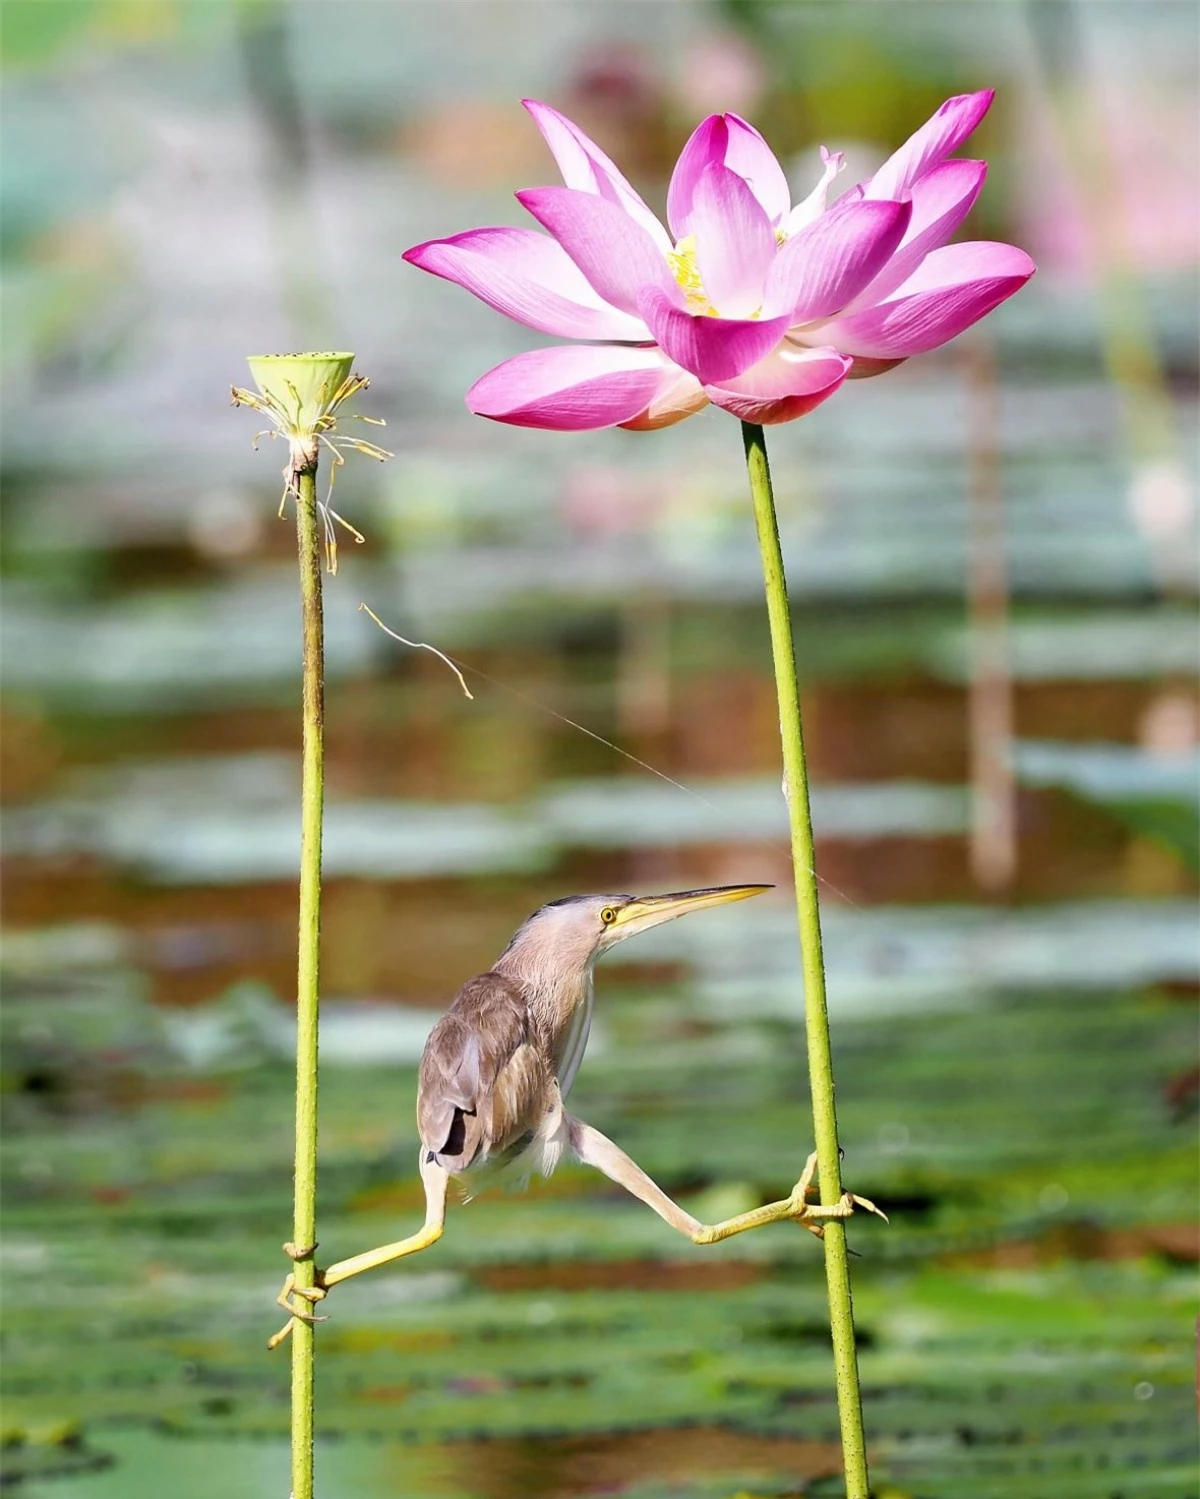 Nhiếp ảnh gia KT WONG cho biết chú cò lửa lùn này dường như đang cố hết sức để tìm kiếm một vị trí săn mồi thuận tiện. "Tôi đã chụp bức ảnh này khi nó đang bám vào cuống của 2 bông hoa sen ở Satay By The Bay, Singapore".